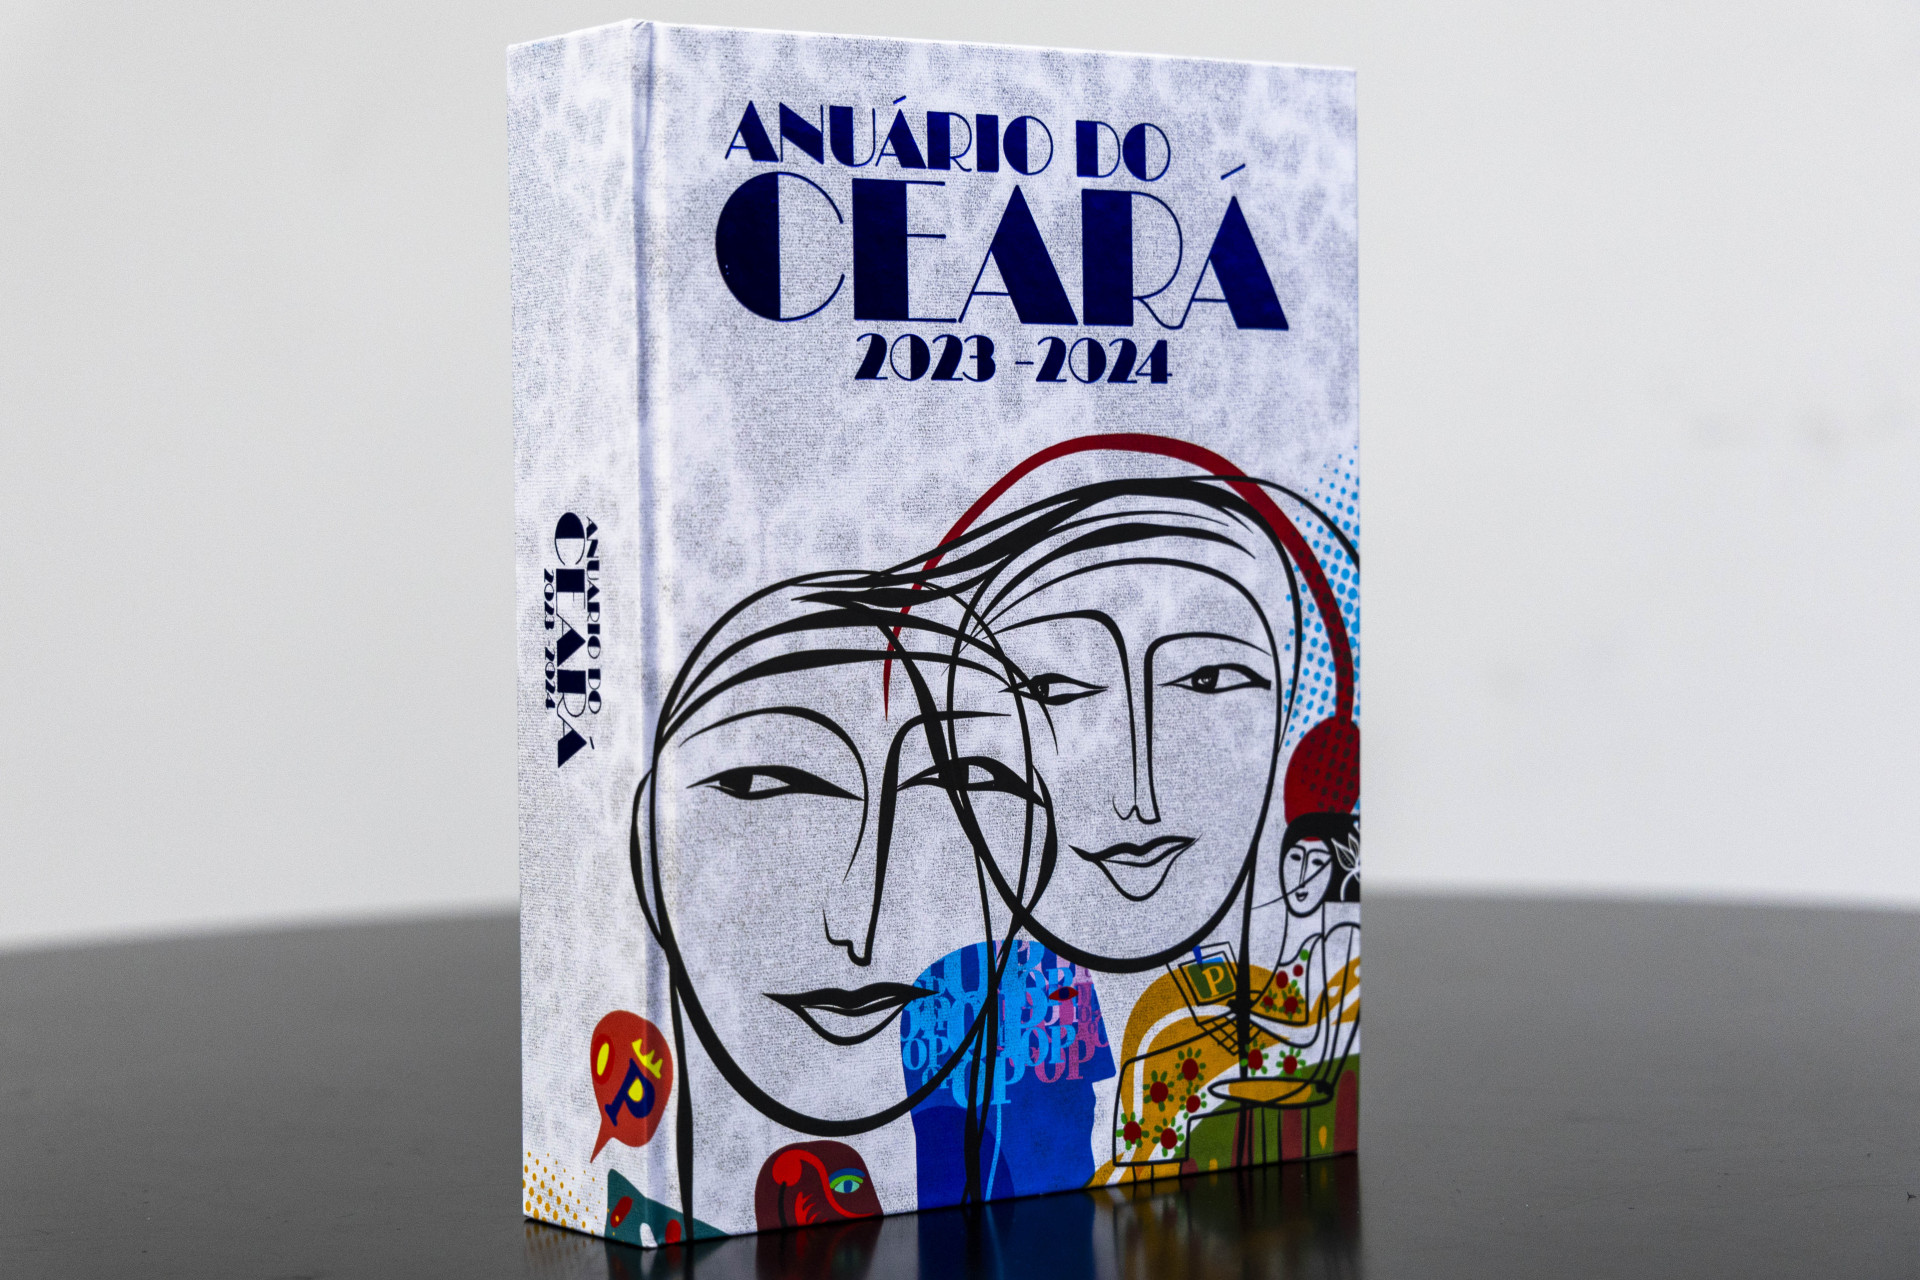 Anuário do Ceará 2023-2024 celebra os 95 anos do O POVO e traz nova edição do “Top of Mind” - Portal Nosso Meio